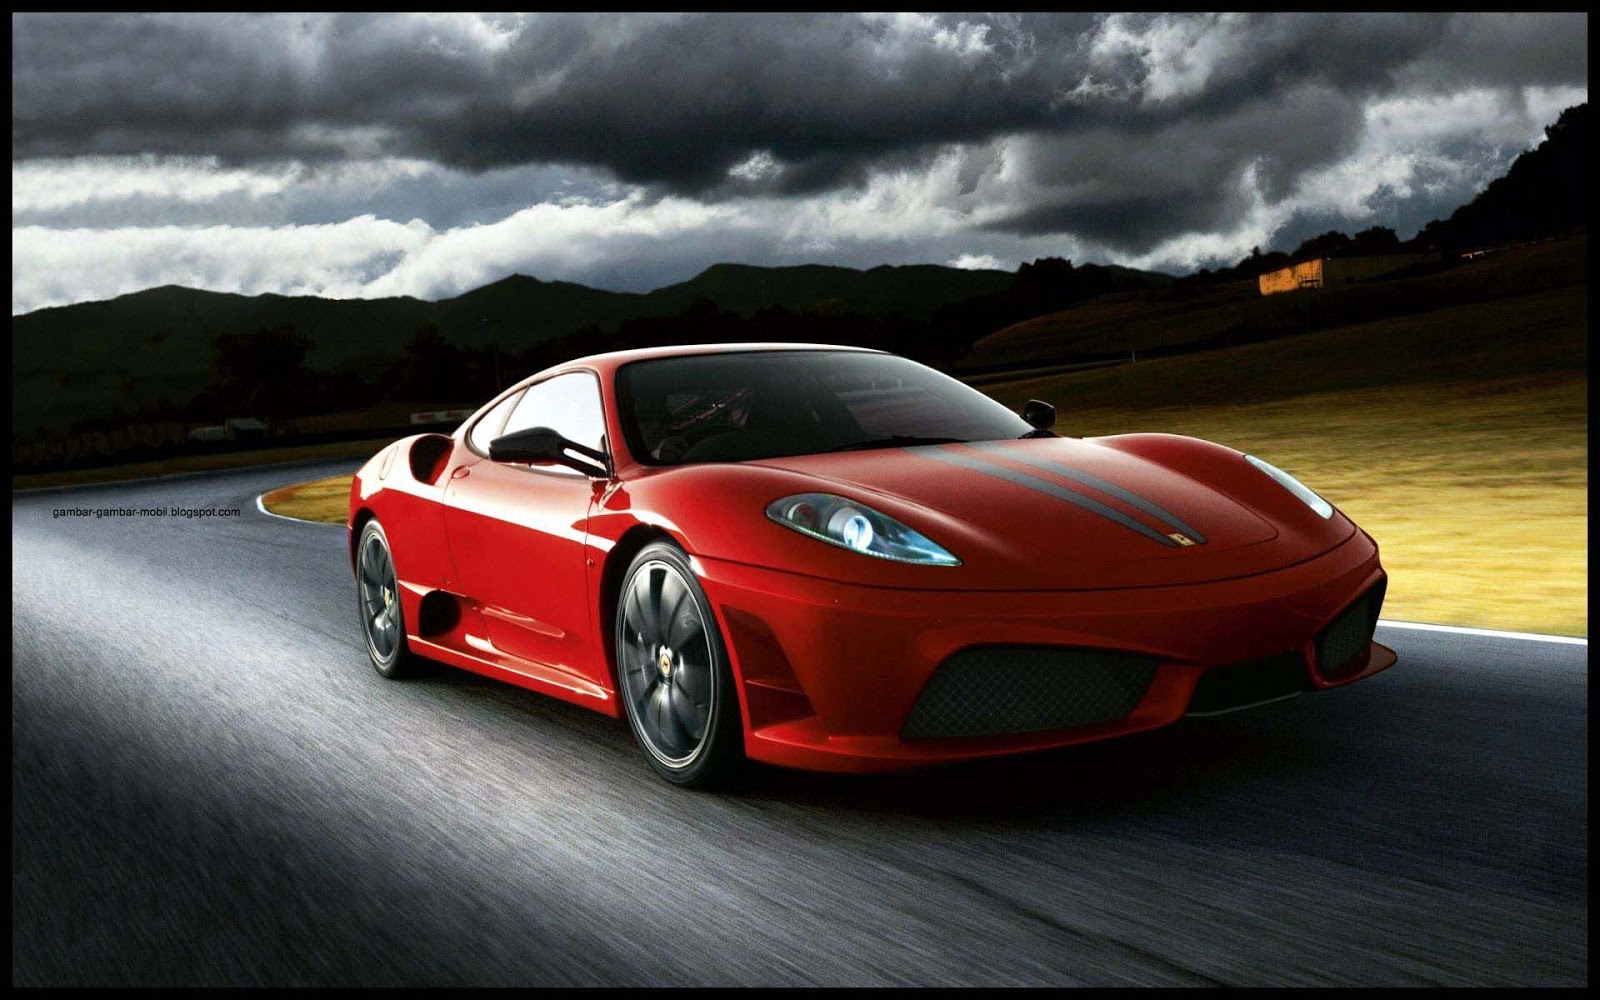 Inilah Kelebihan Mobil Ferrari Sebagai Mobil Mewah Dunia Gambar